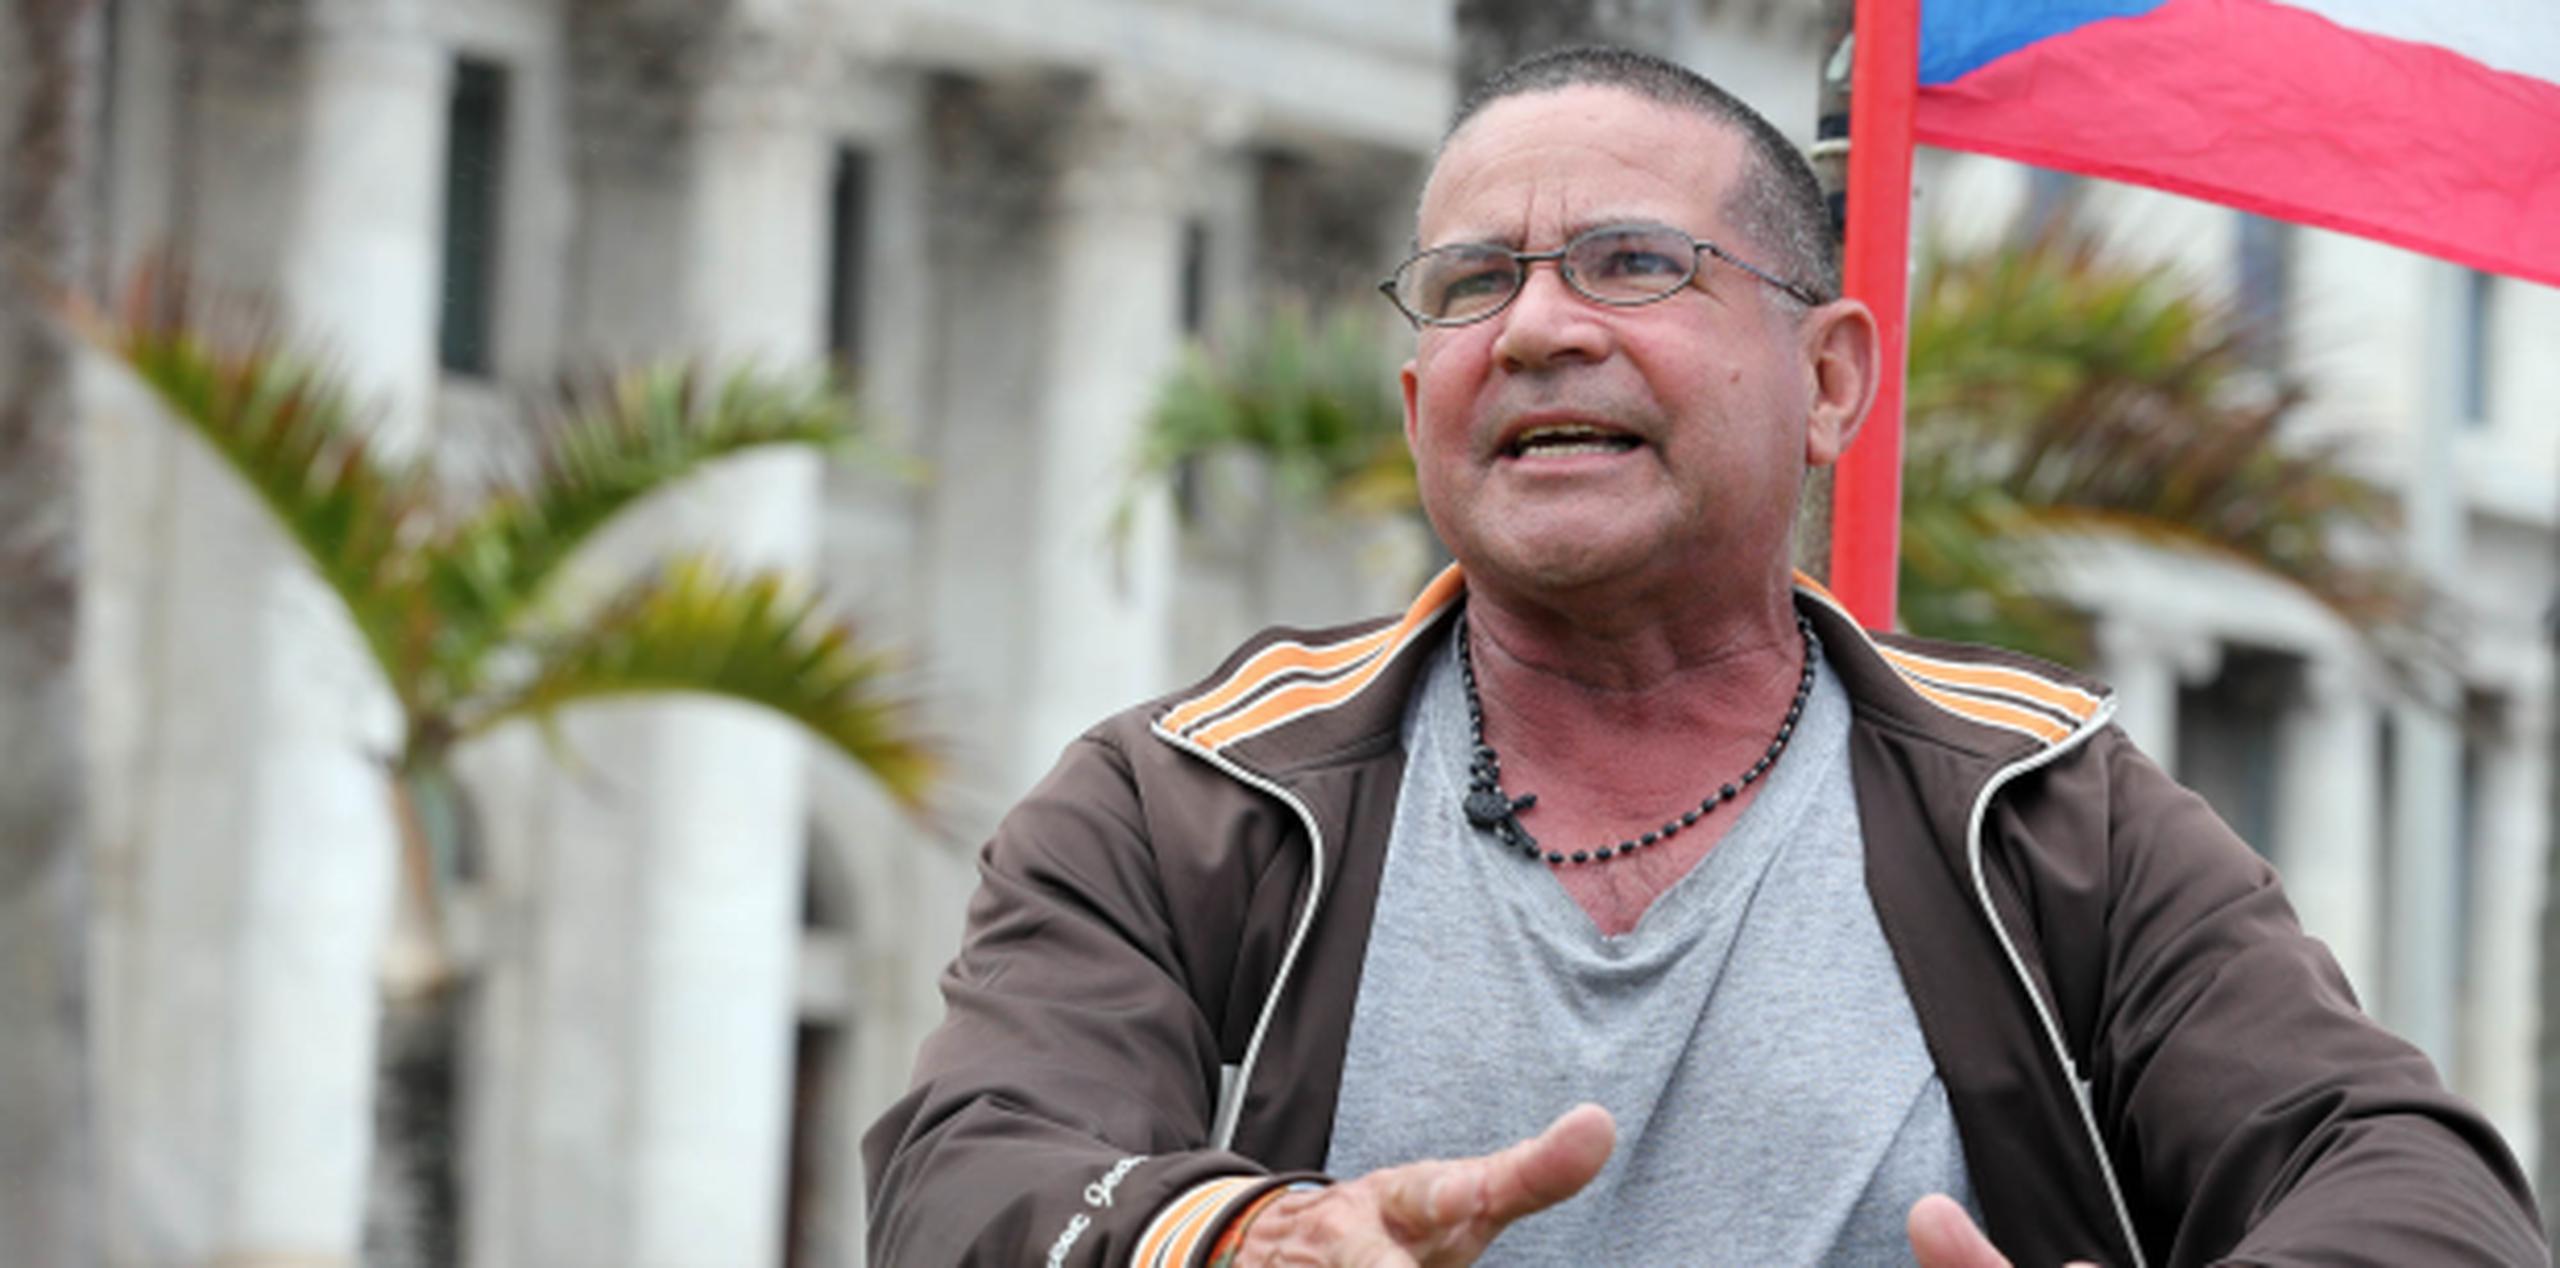 Juan Rolón Rivera lleva a cabo una singular protesta frente al Capitolio para reclamar cambios a la Ley del Certificado de Antecedentes Penales.(david.villafane@gfrmedia.com)